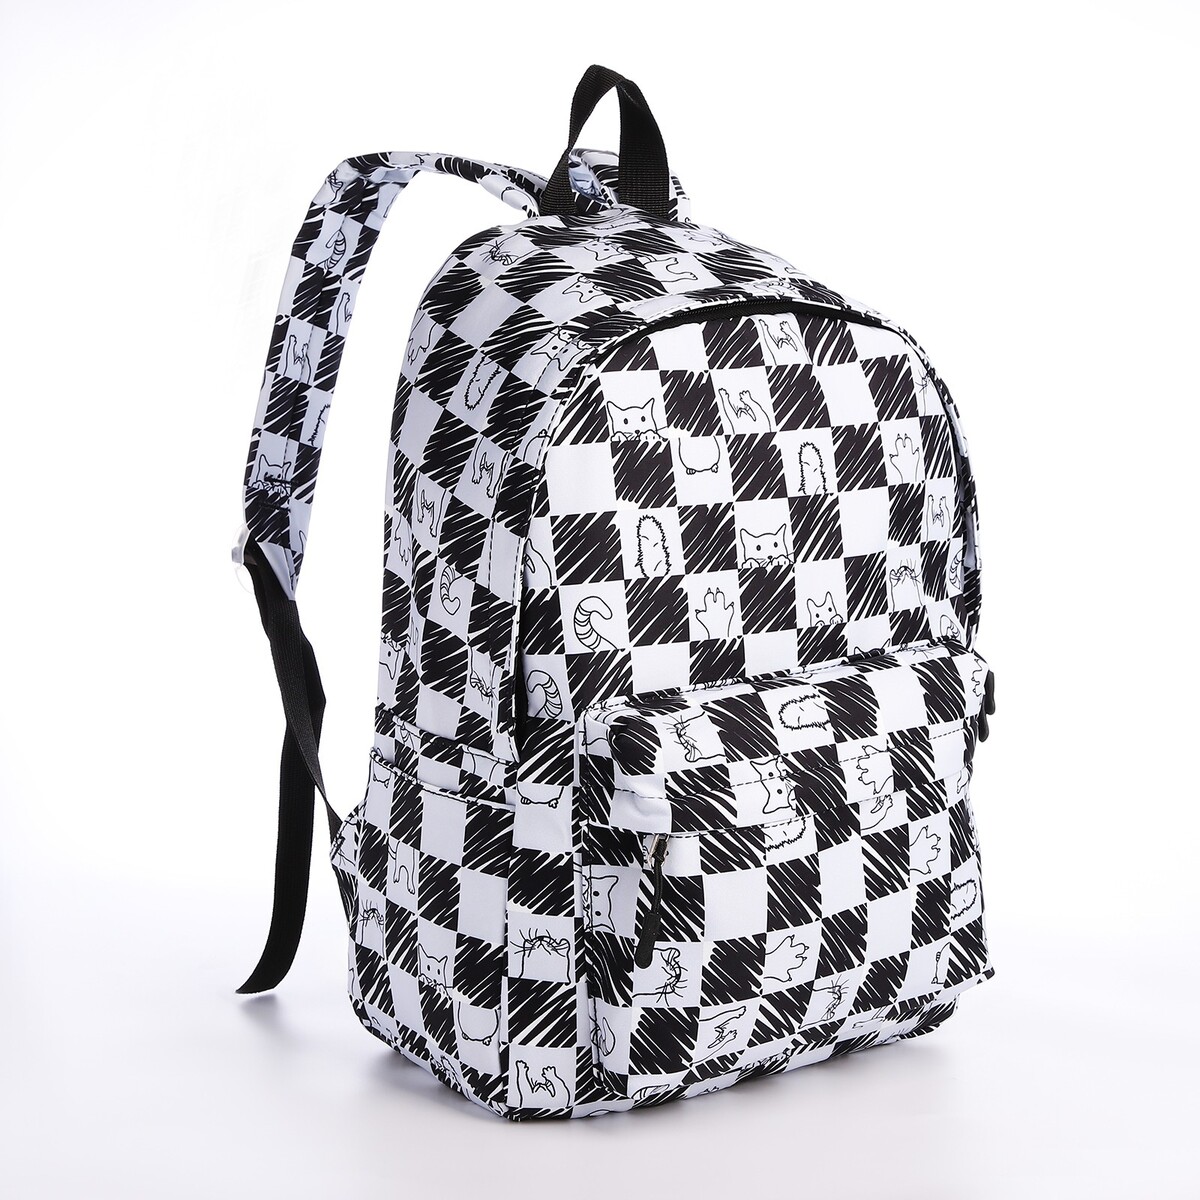 Рюкзак школьный из текстиля на молнии, 4 кармана, цвет черный/белый